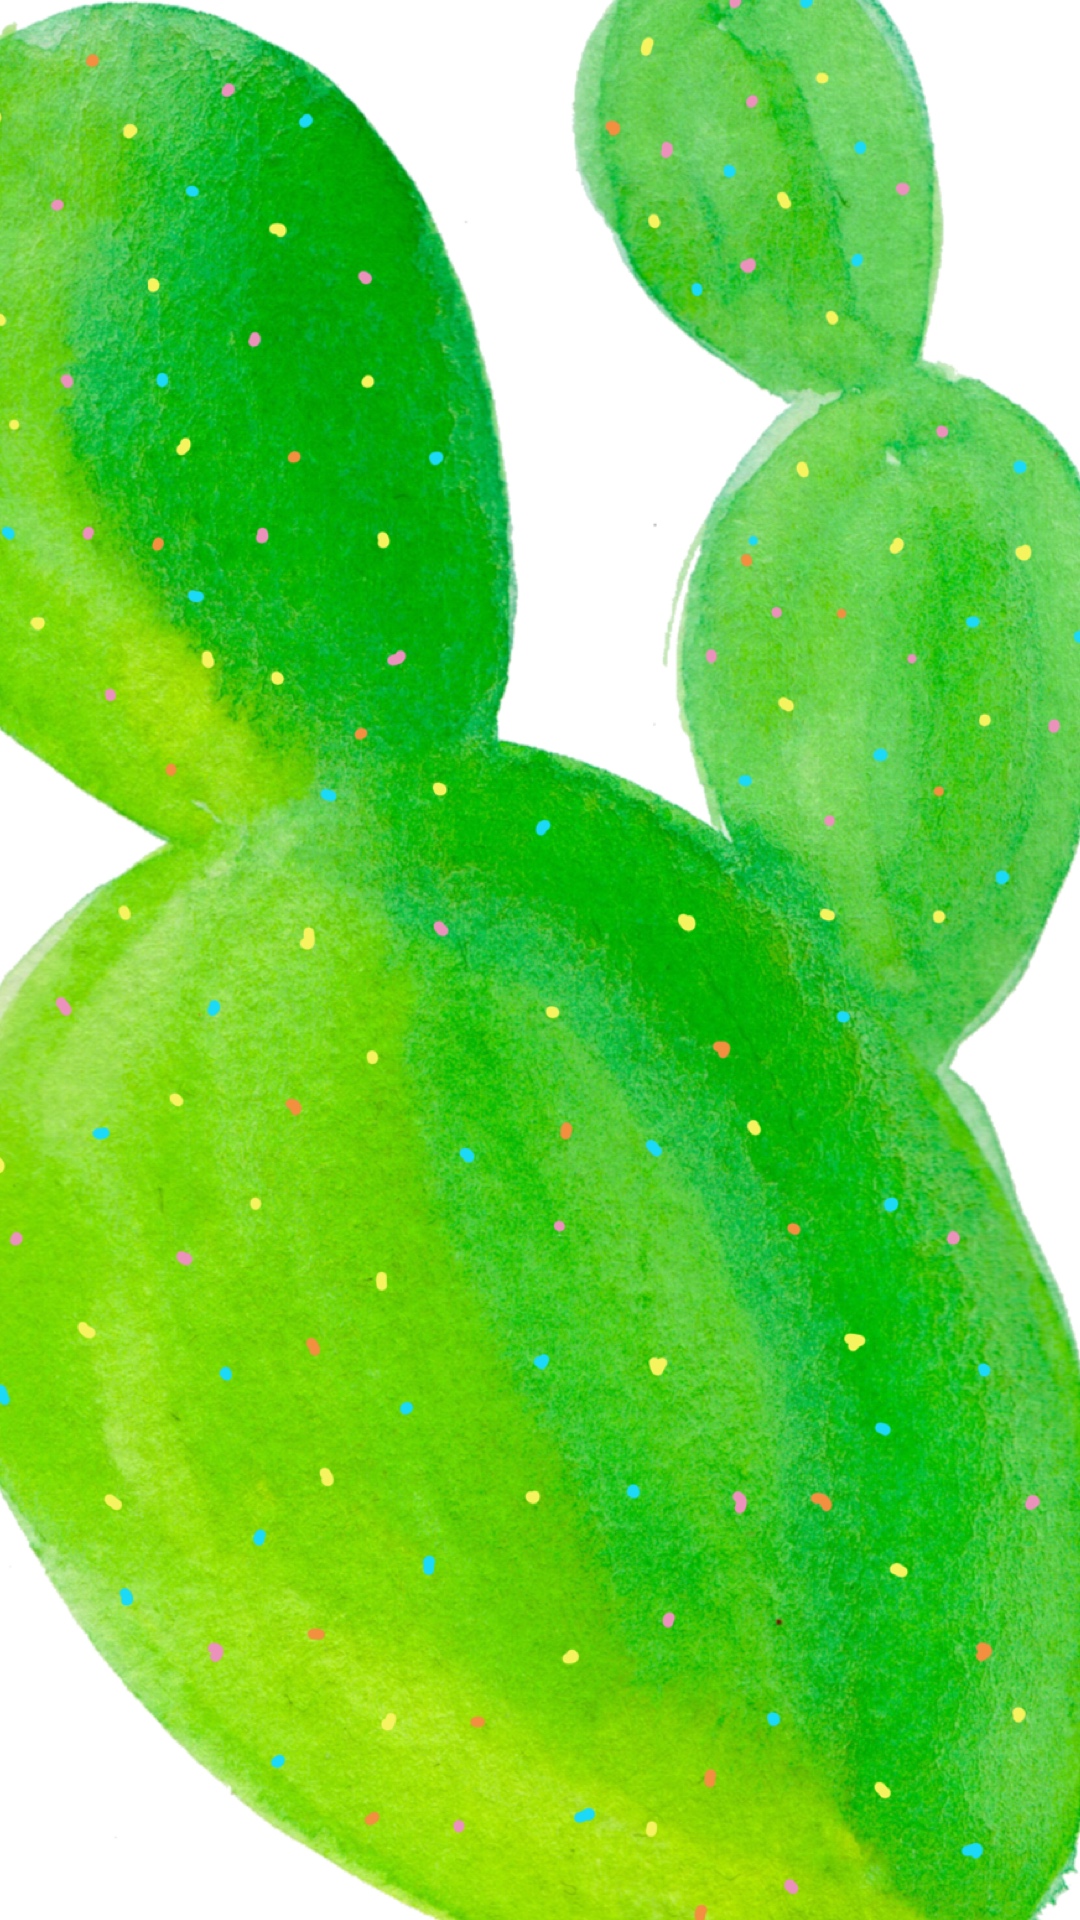 phone wallpaper watercolor cactus